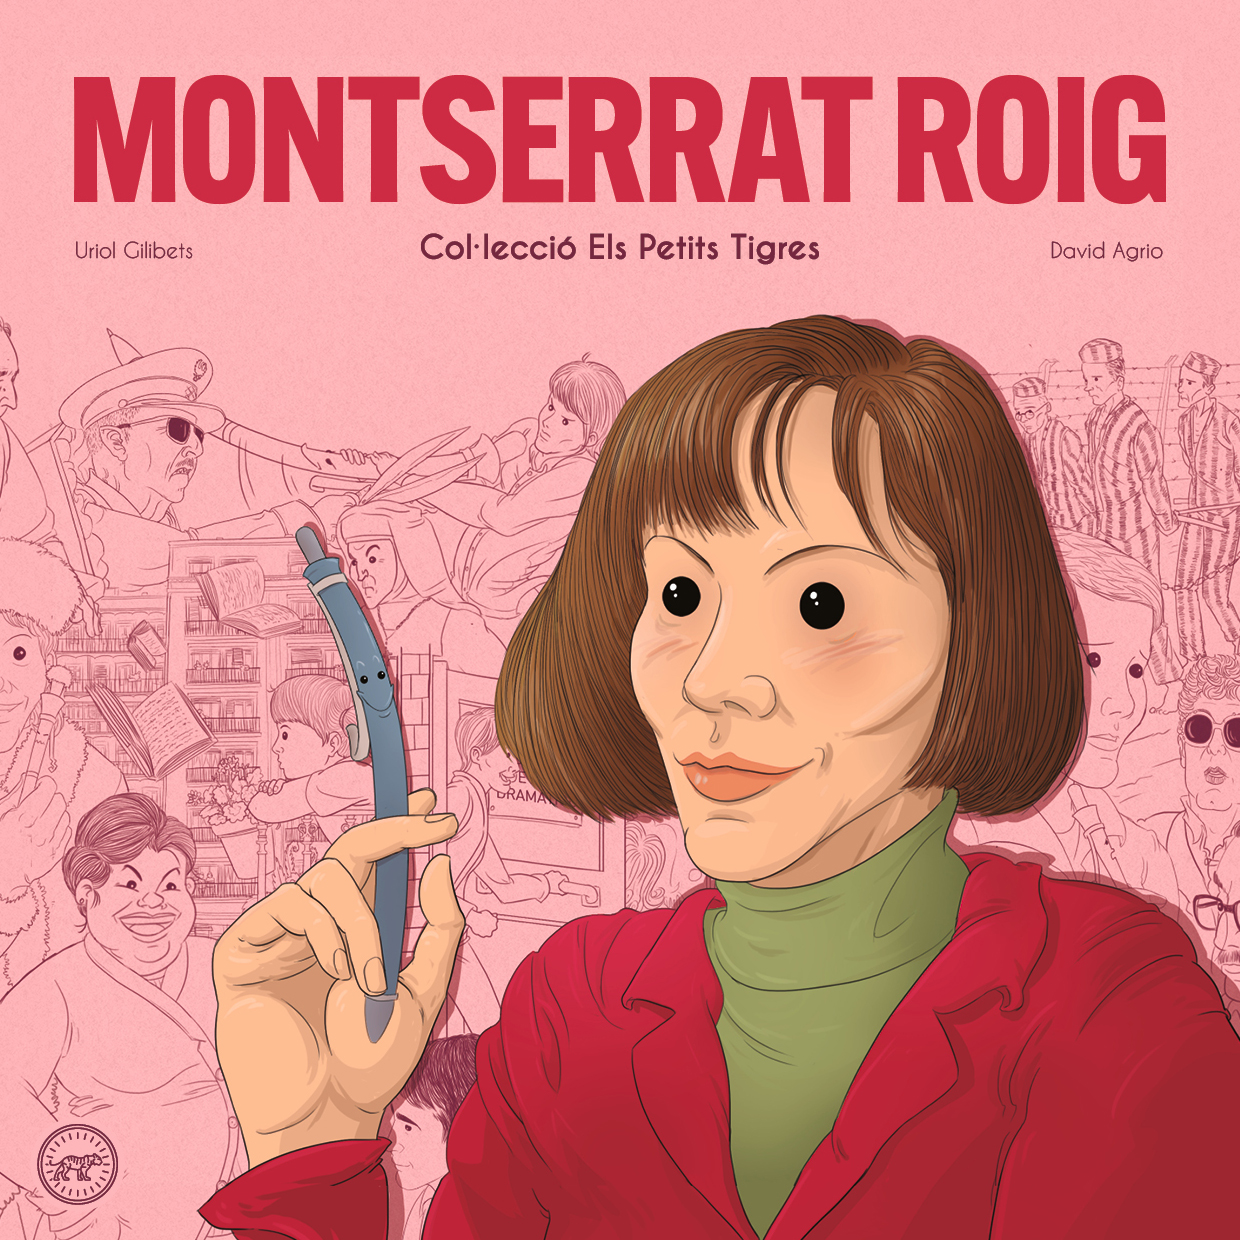 Montserrat Roig